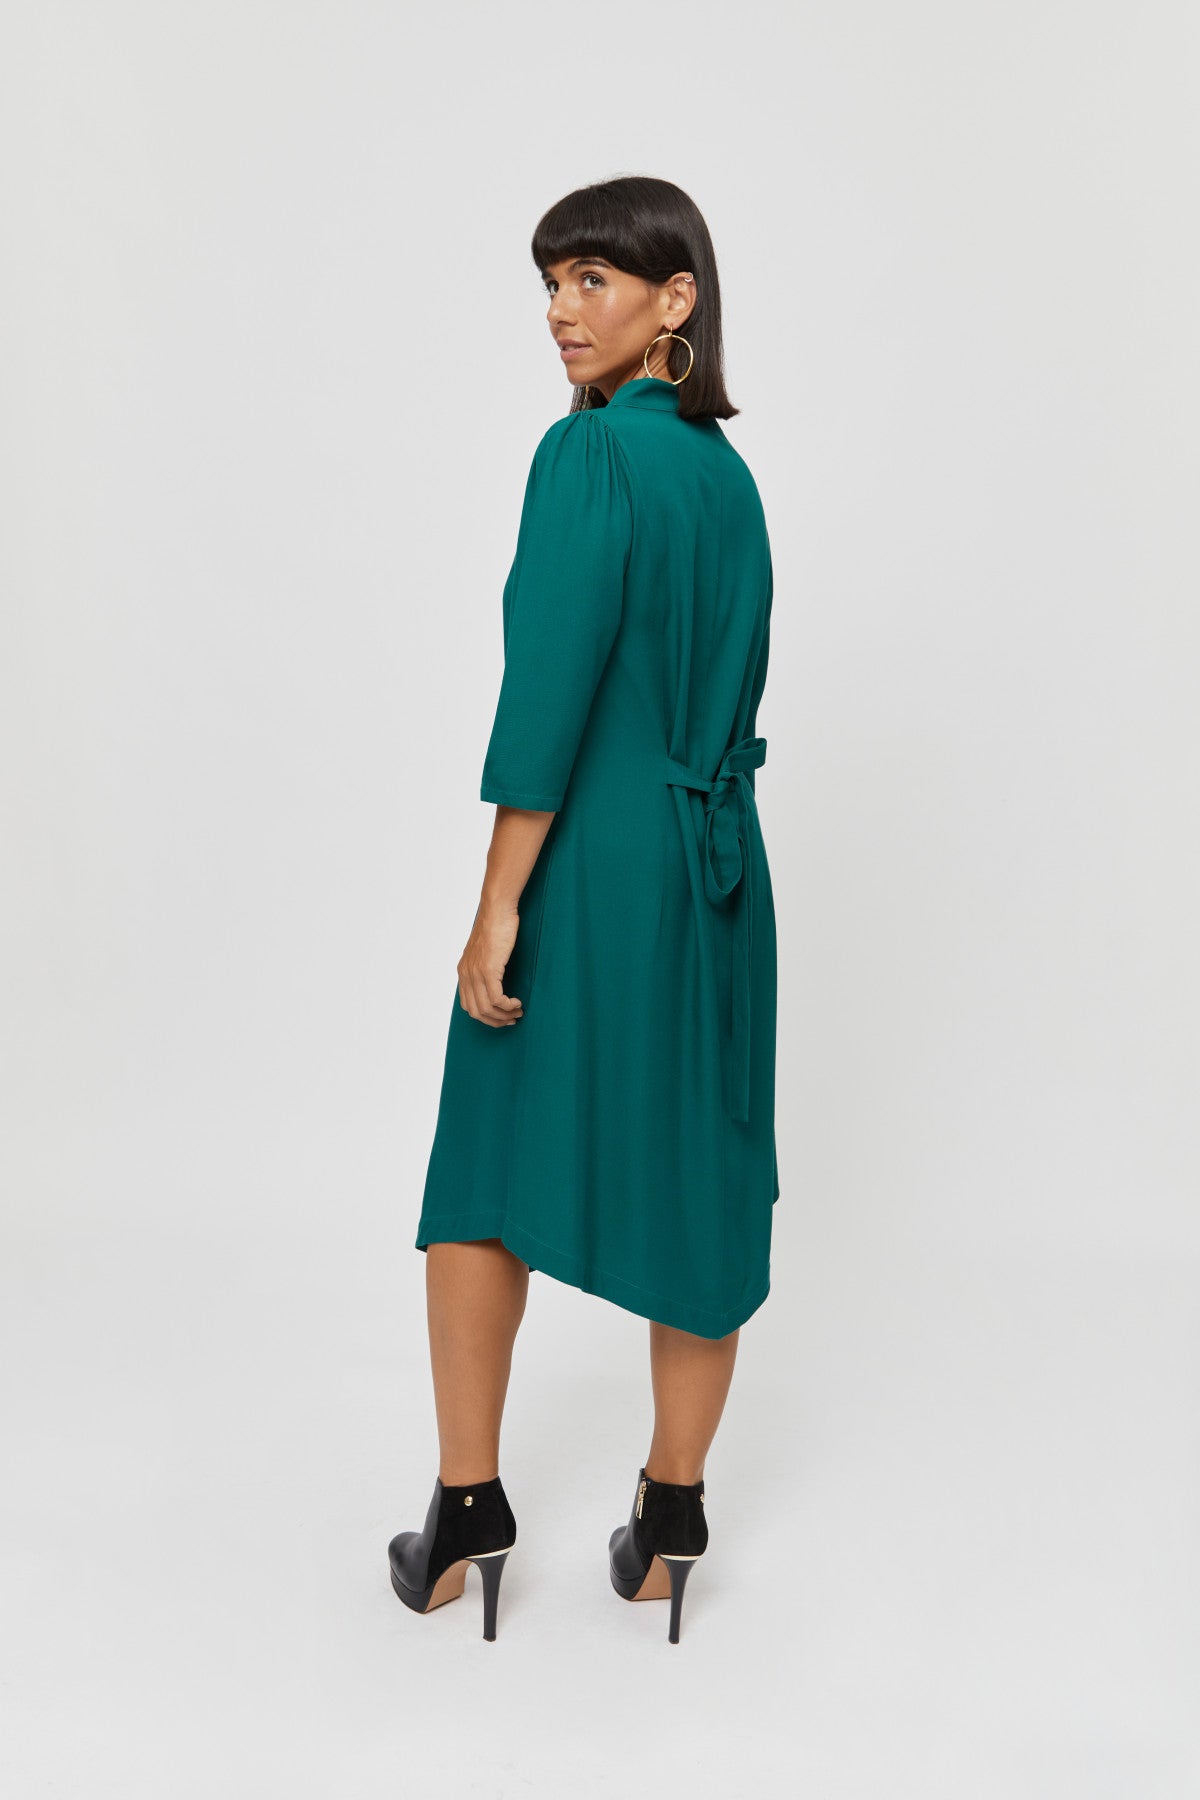 Suzi | Kleid mit Bootsausschnitt und Gürtel in Grün